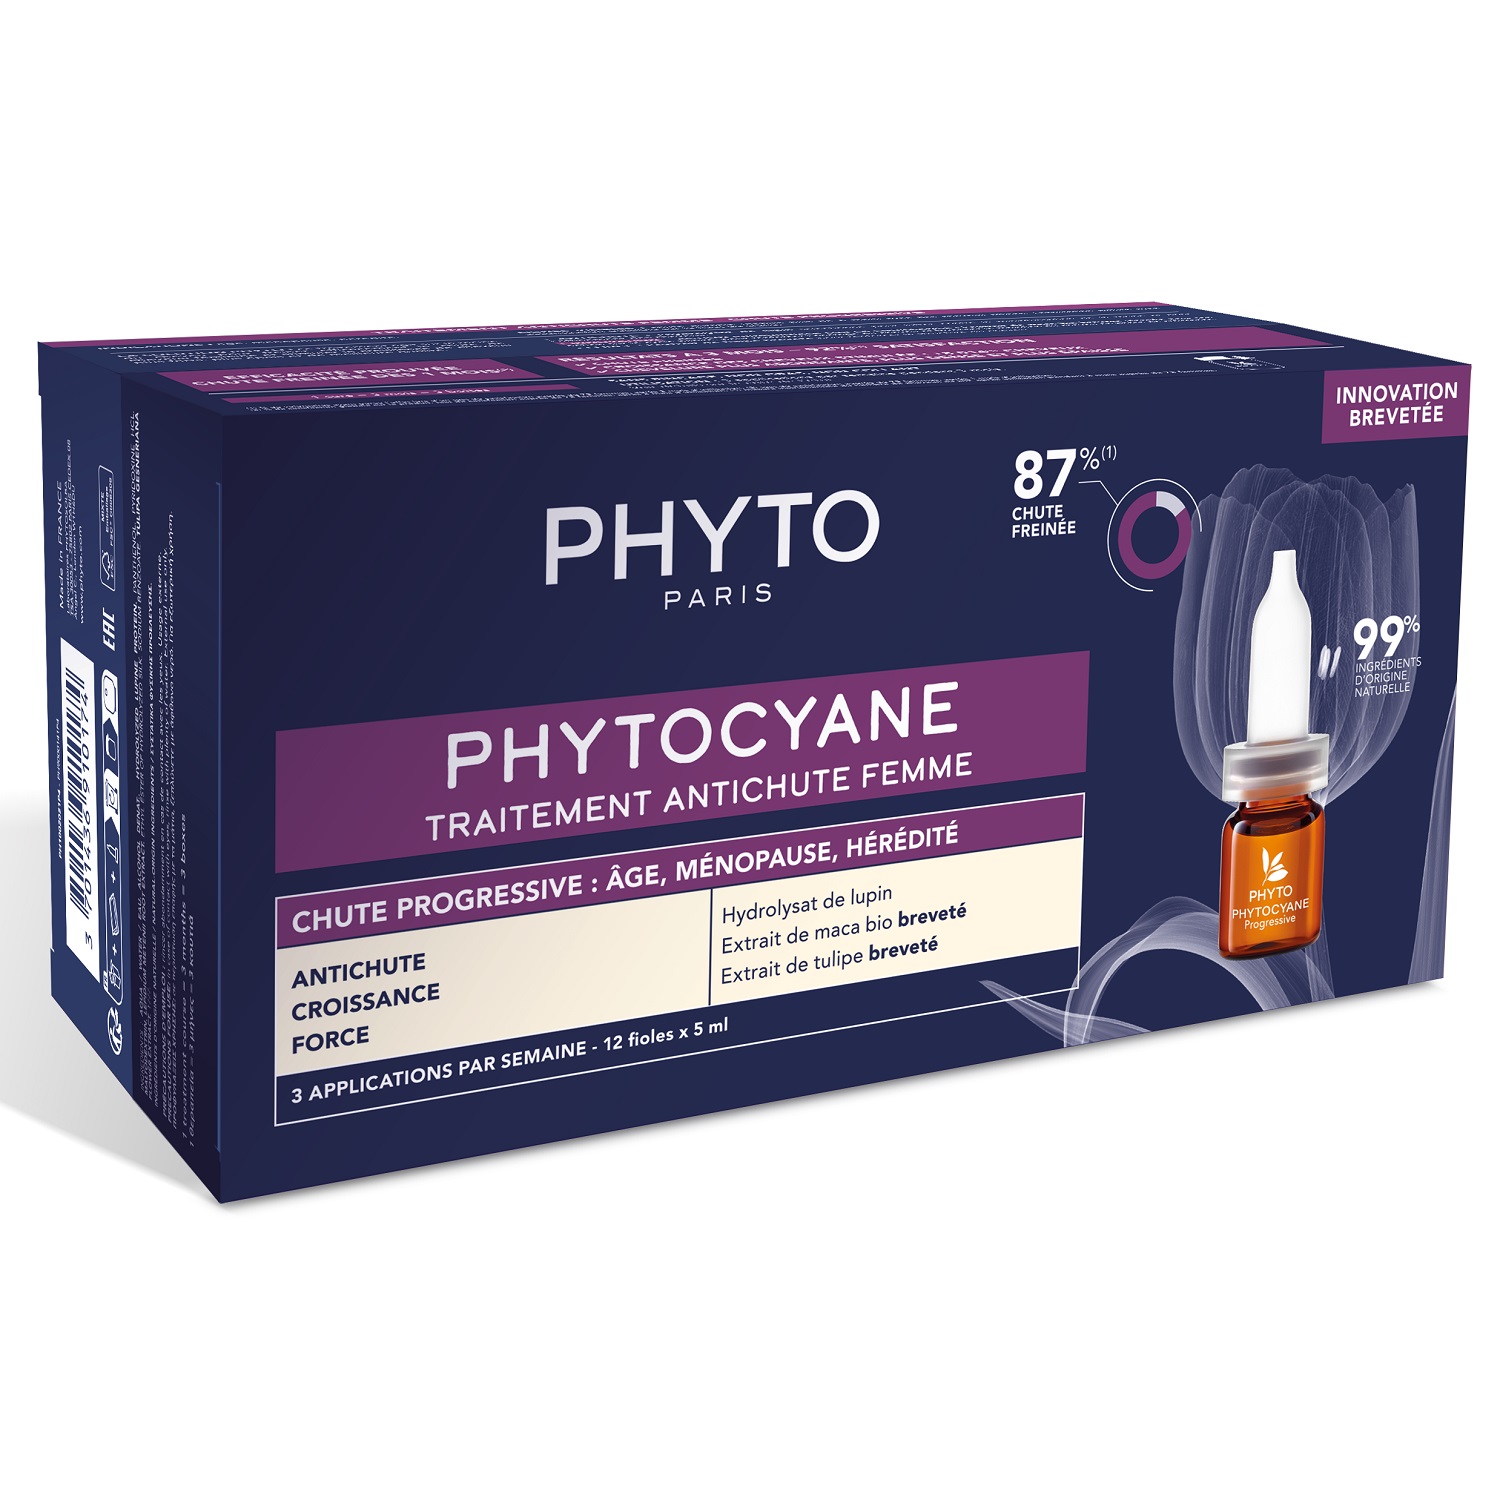 Phyto Сыворотка против выпадения волос для женщин, 12 флаконов х 5 мл (Phyto, Phytocyane) phyto phytocyane средство против выпадения волос для женщин 60 мл